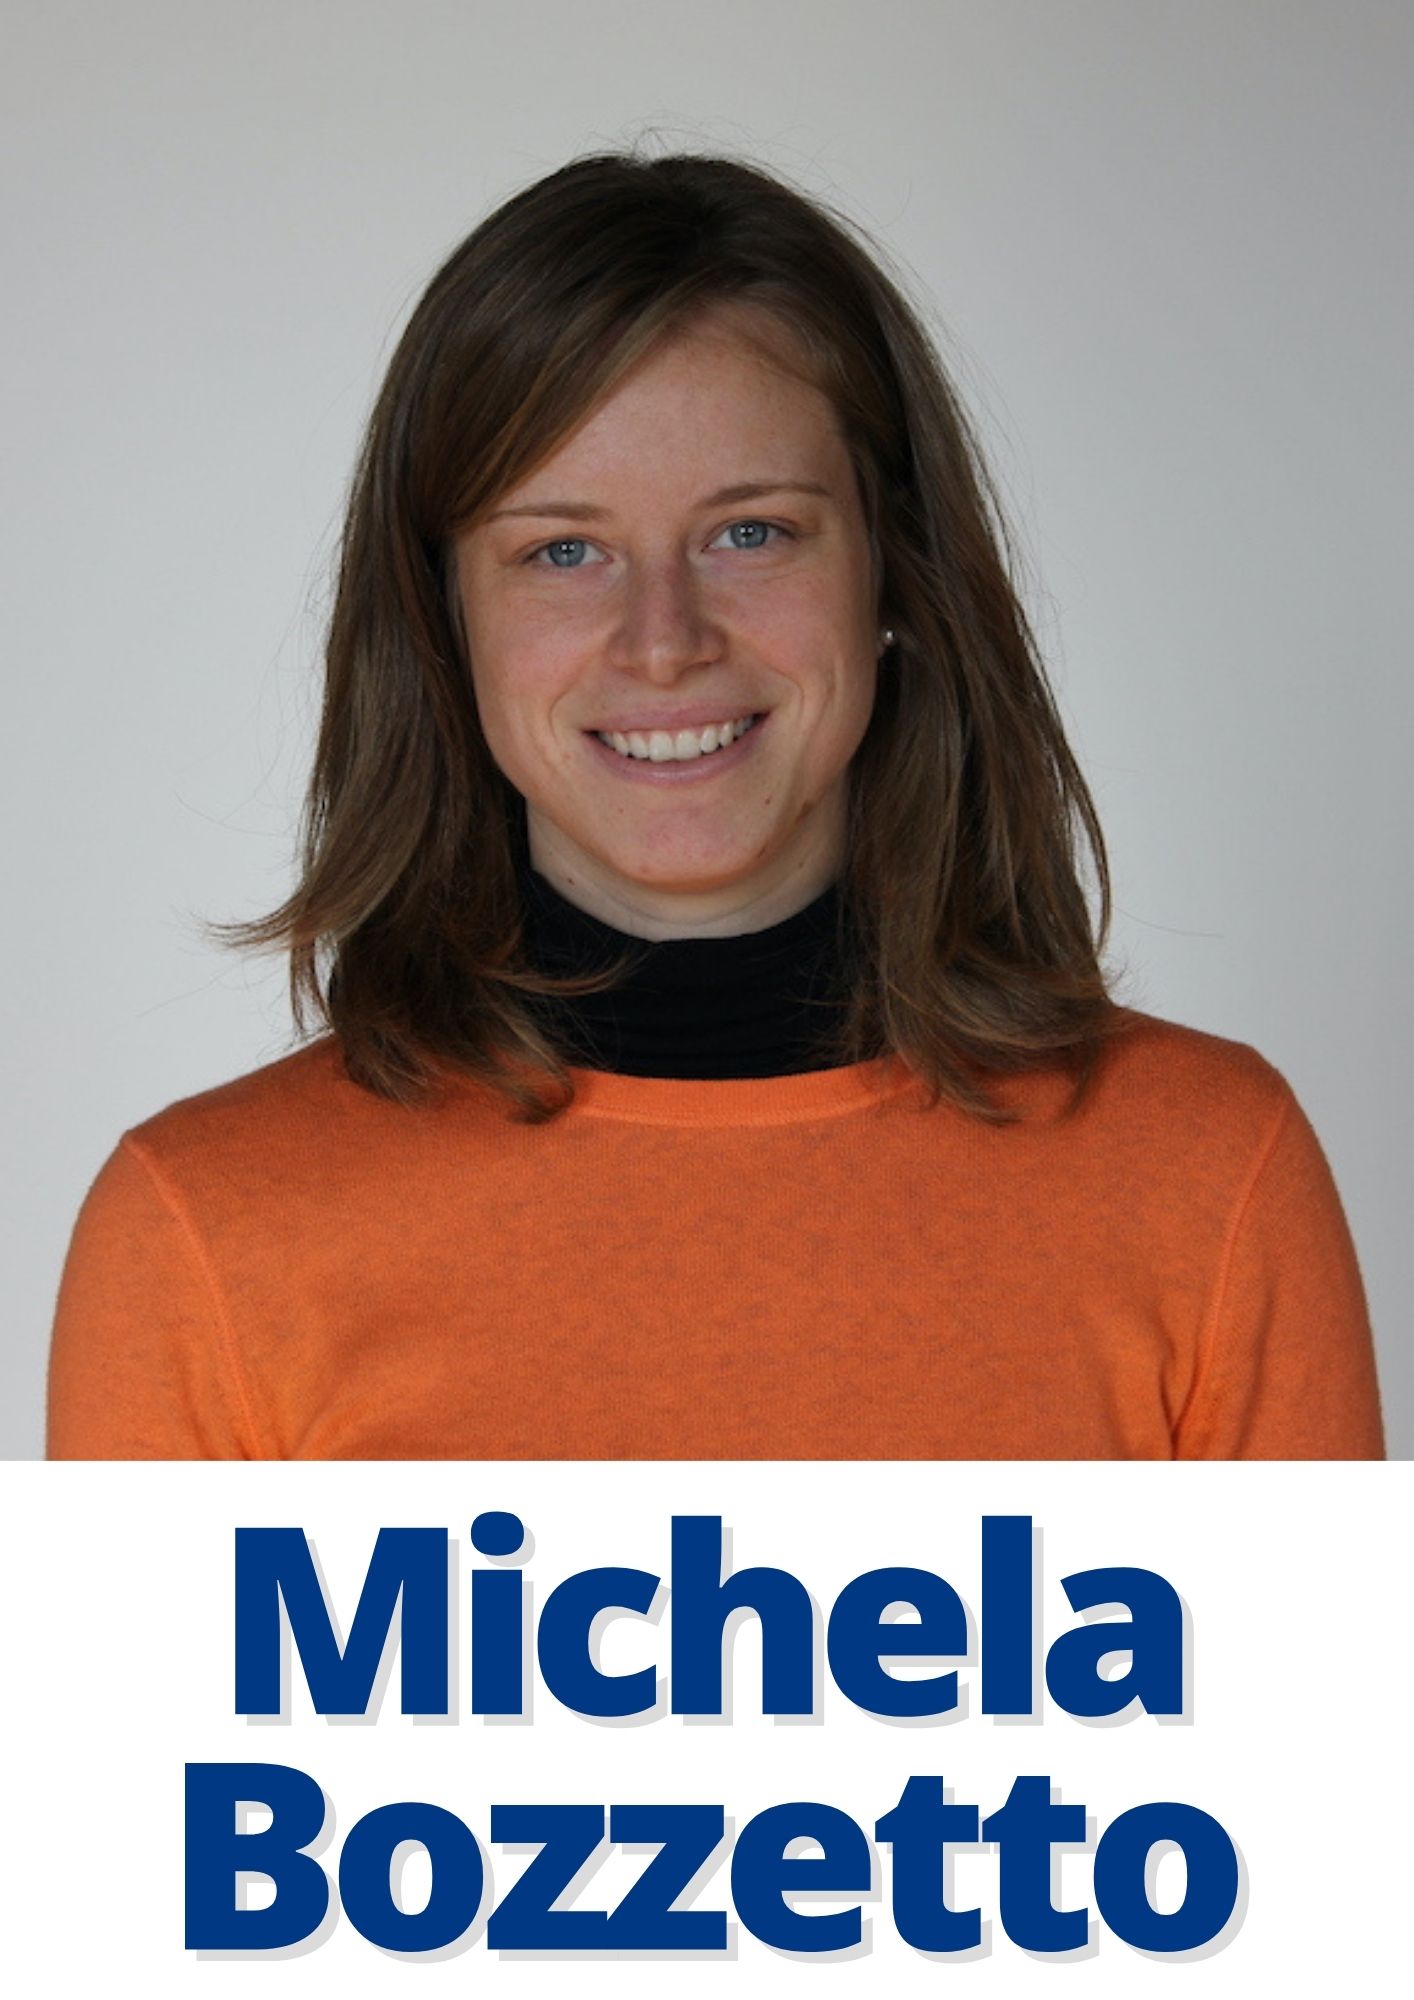 Michela Bozzetto